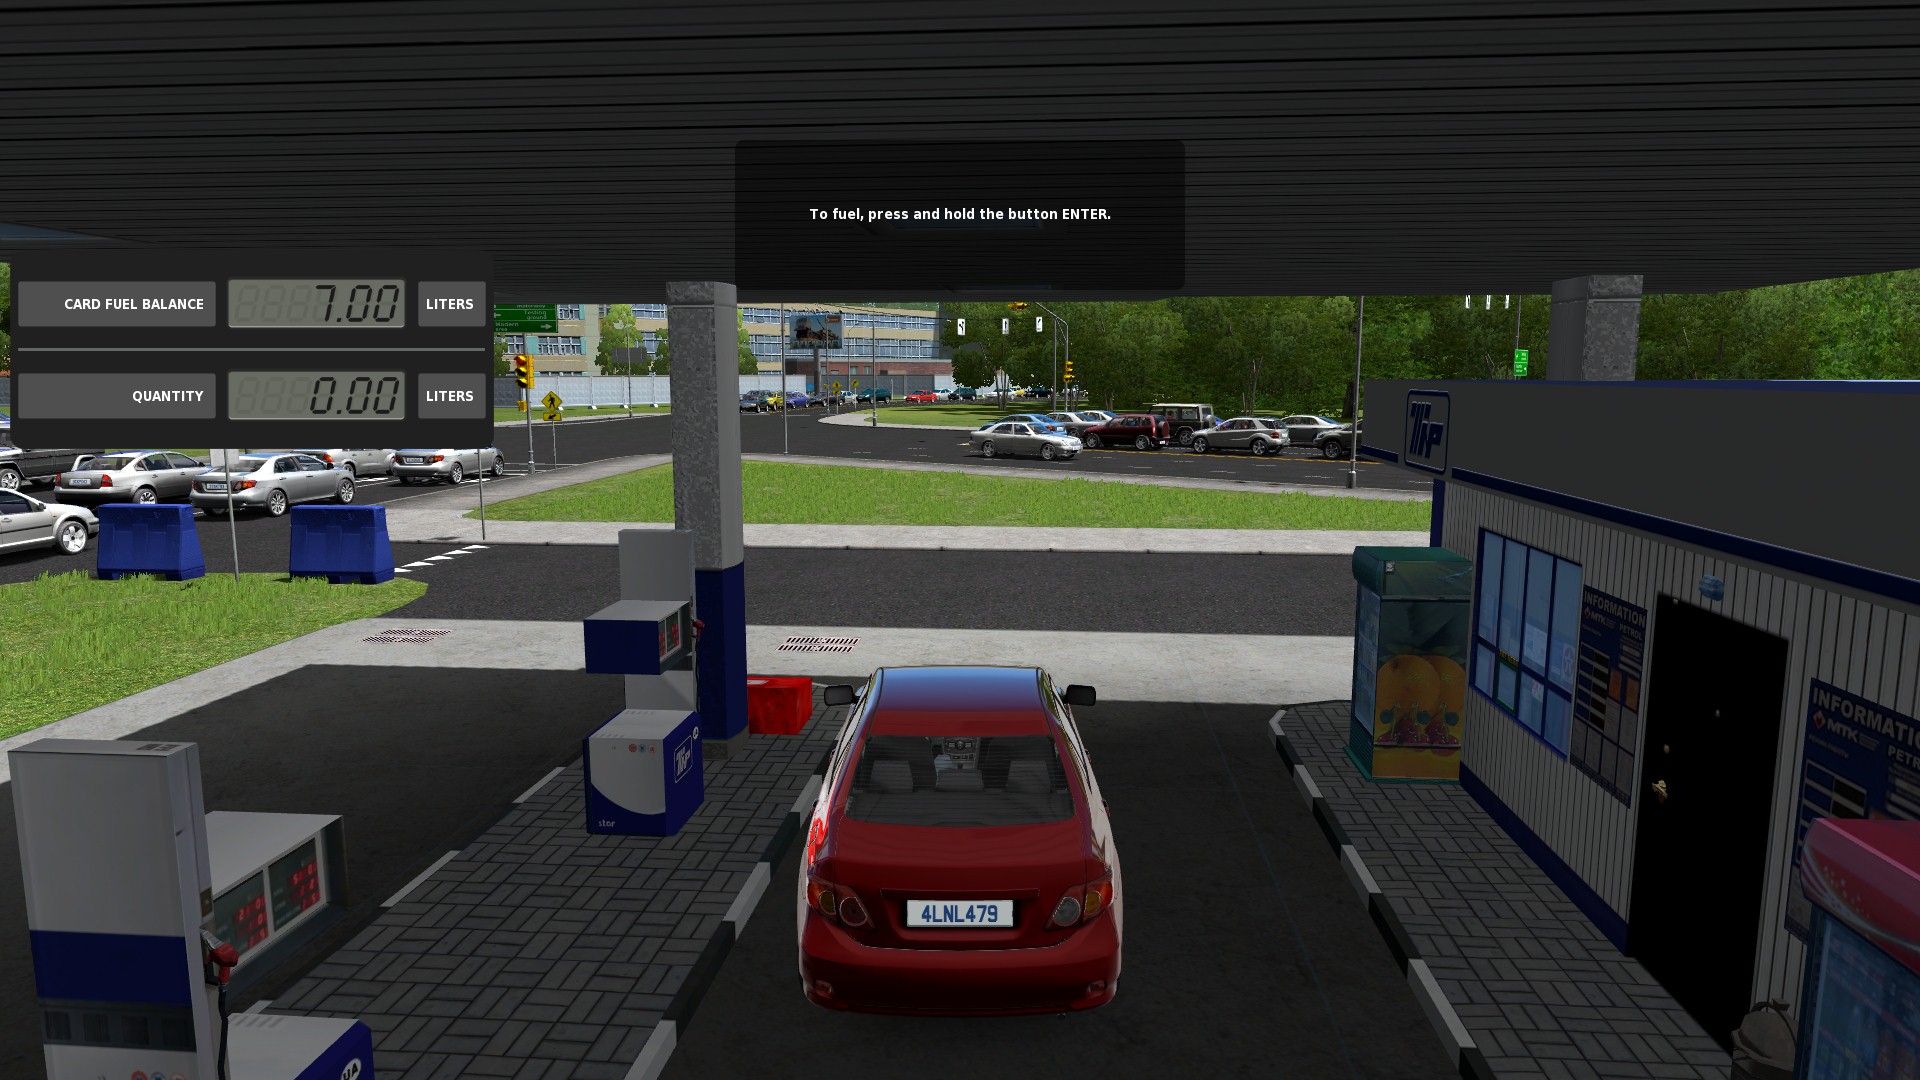 city car driving simulator mac